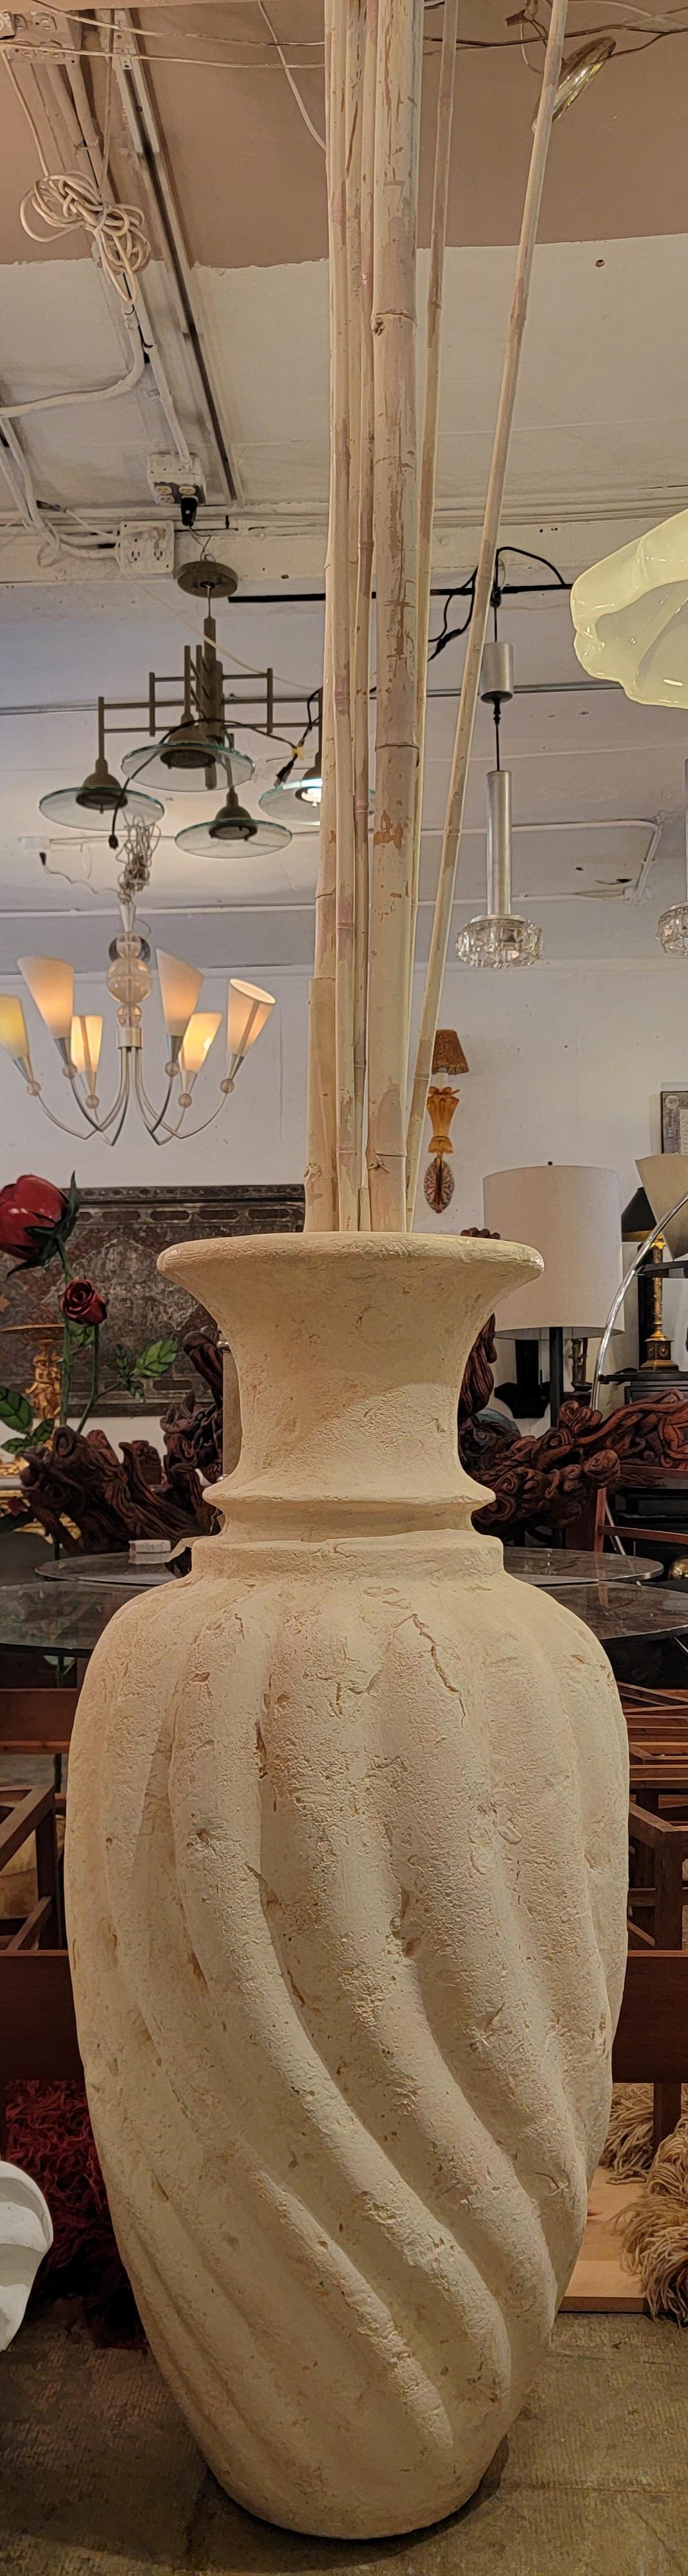 Vase monumental français des années 60 peint à l'argile. Le bambou est amovible pour l'expédition. Design/One.
Le vase mesure 20 cm de diamètre et 47,5 cm de hauteur.
les plus longues tiges de bambou mesurent environ 103 pouces
